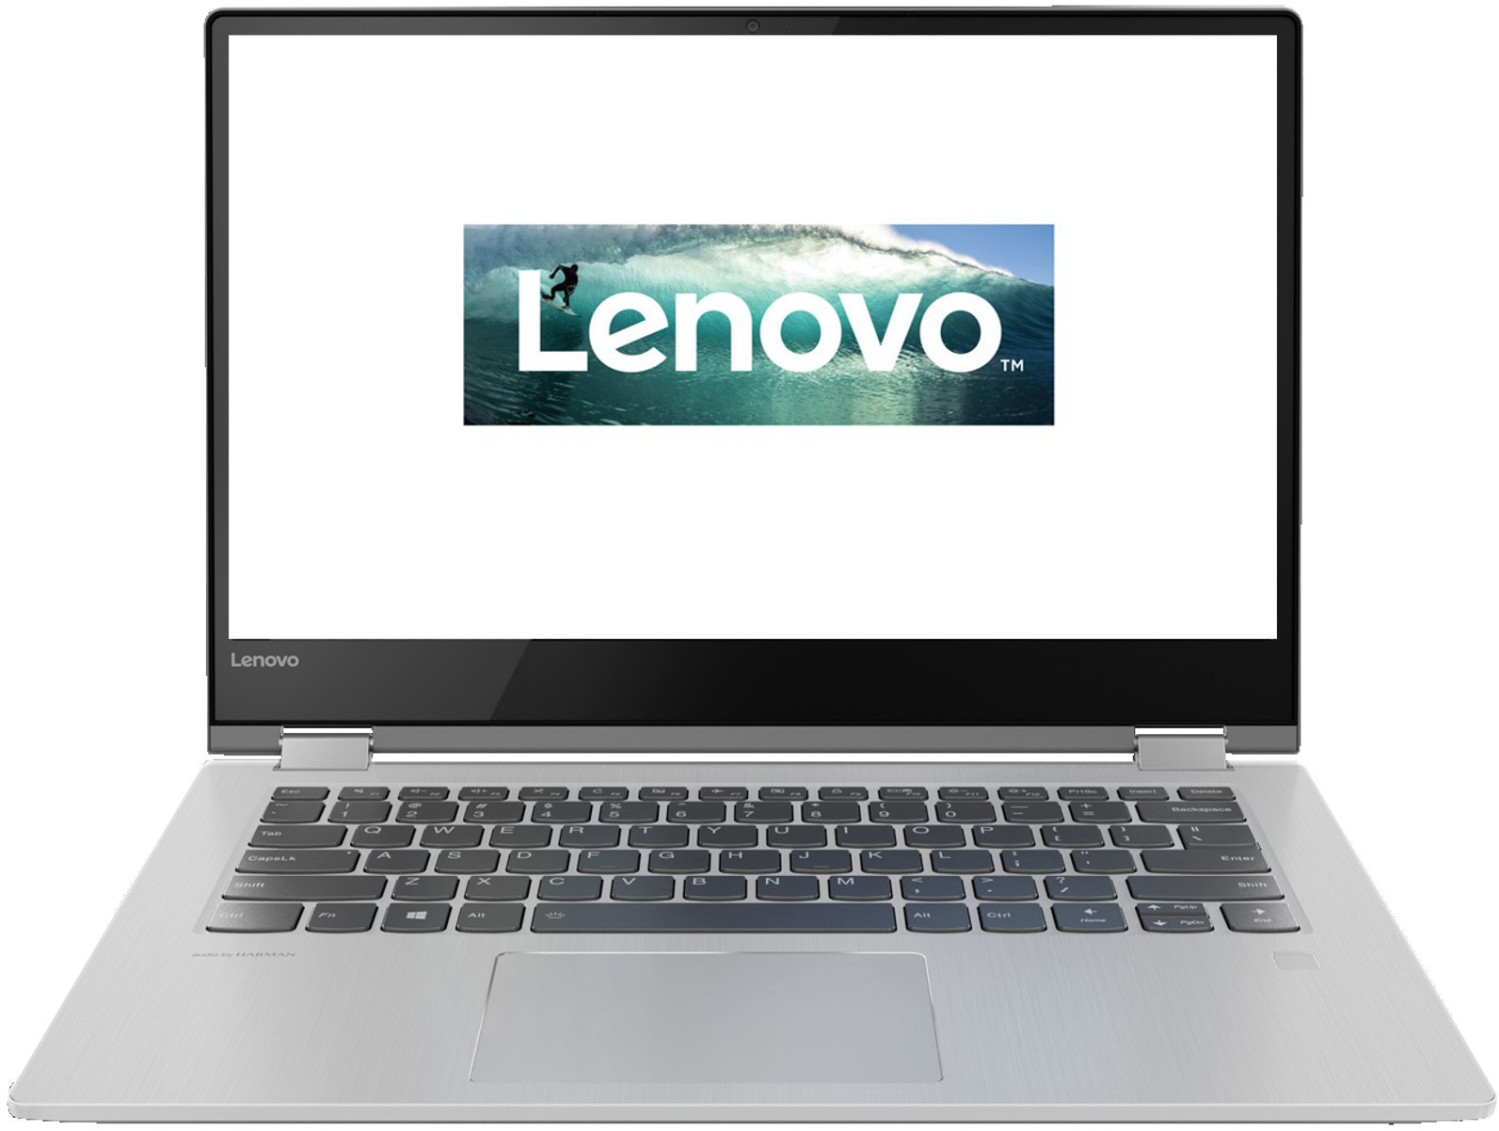 Lenovo Yoga 530 (81EK00U1)